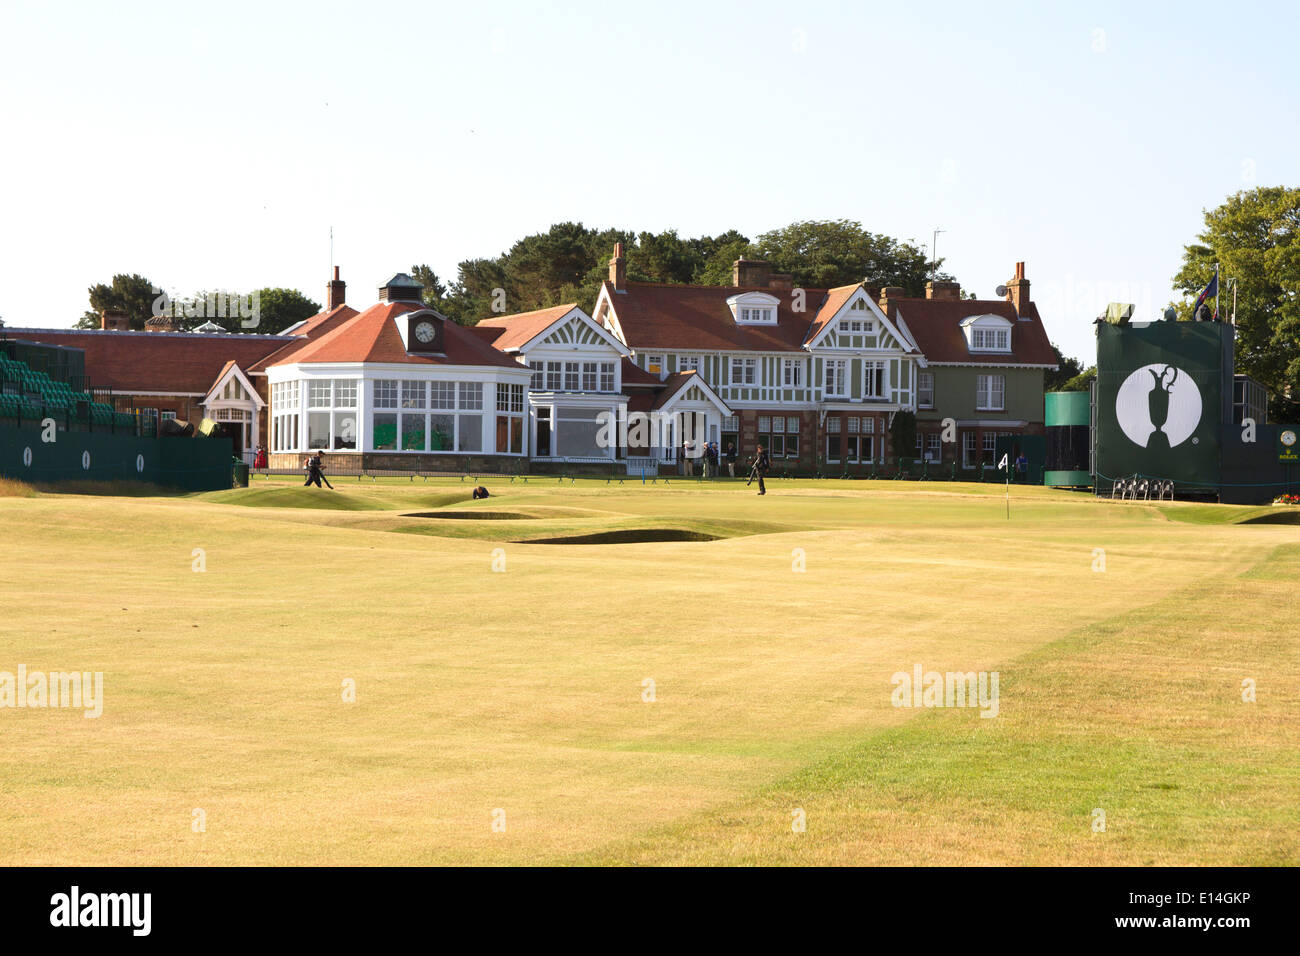 Campo de golf Muirfield durante el 2013 Open británico en Escocia Gullane Foto de stock